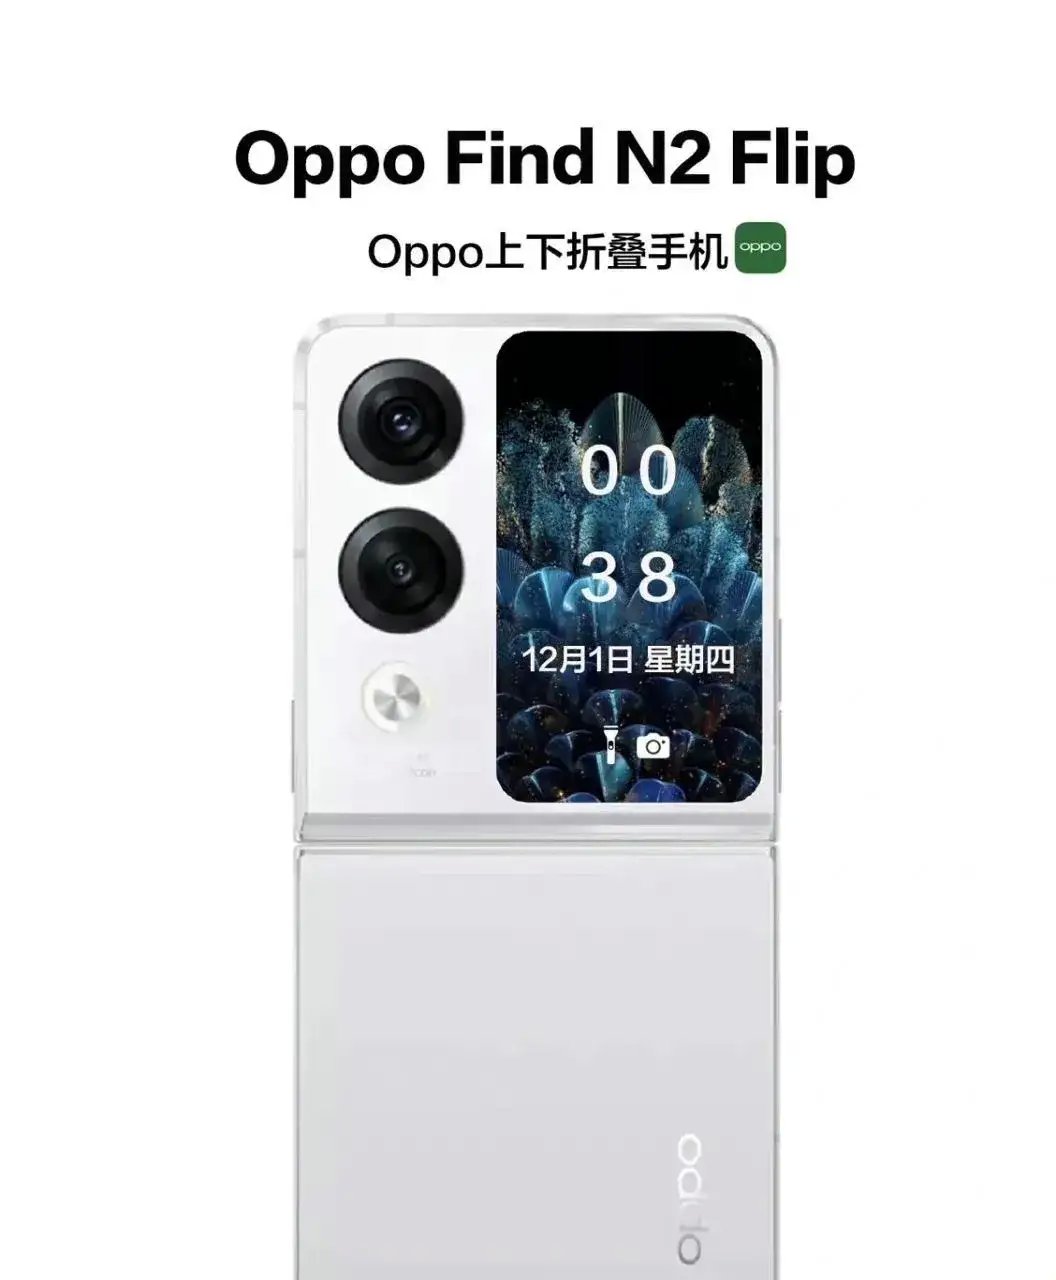 Oppo Find N2 Flip cena specyfikacja składany smartfon render